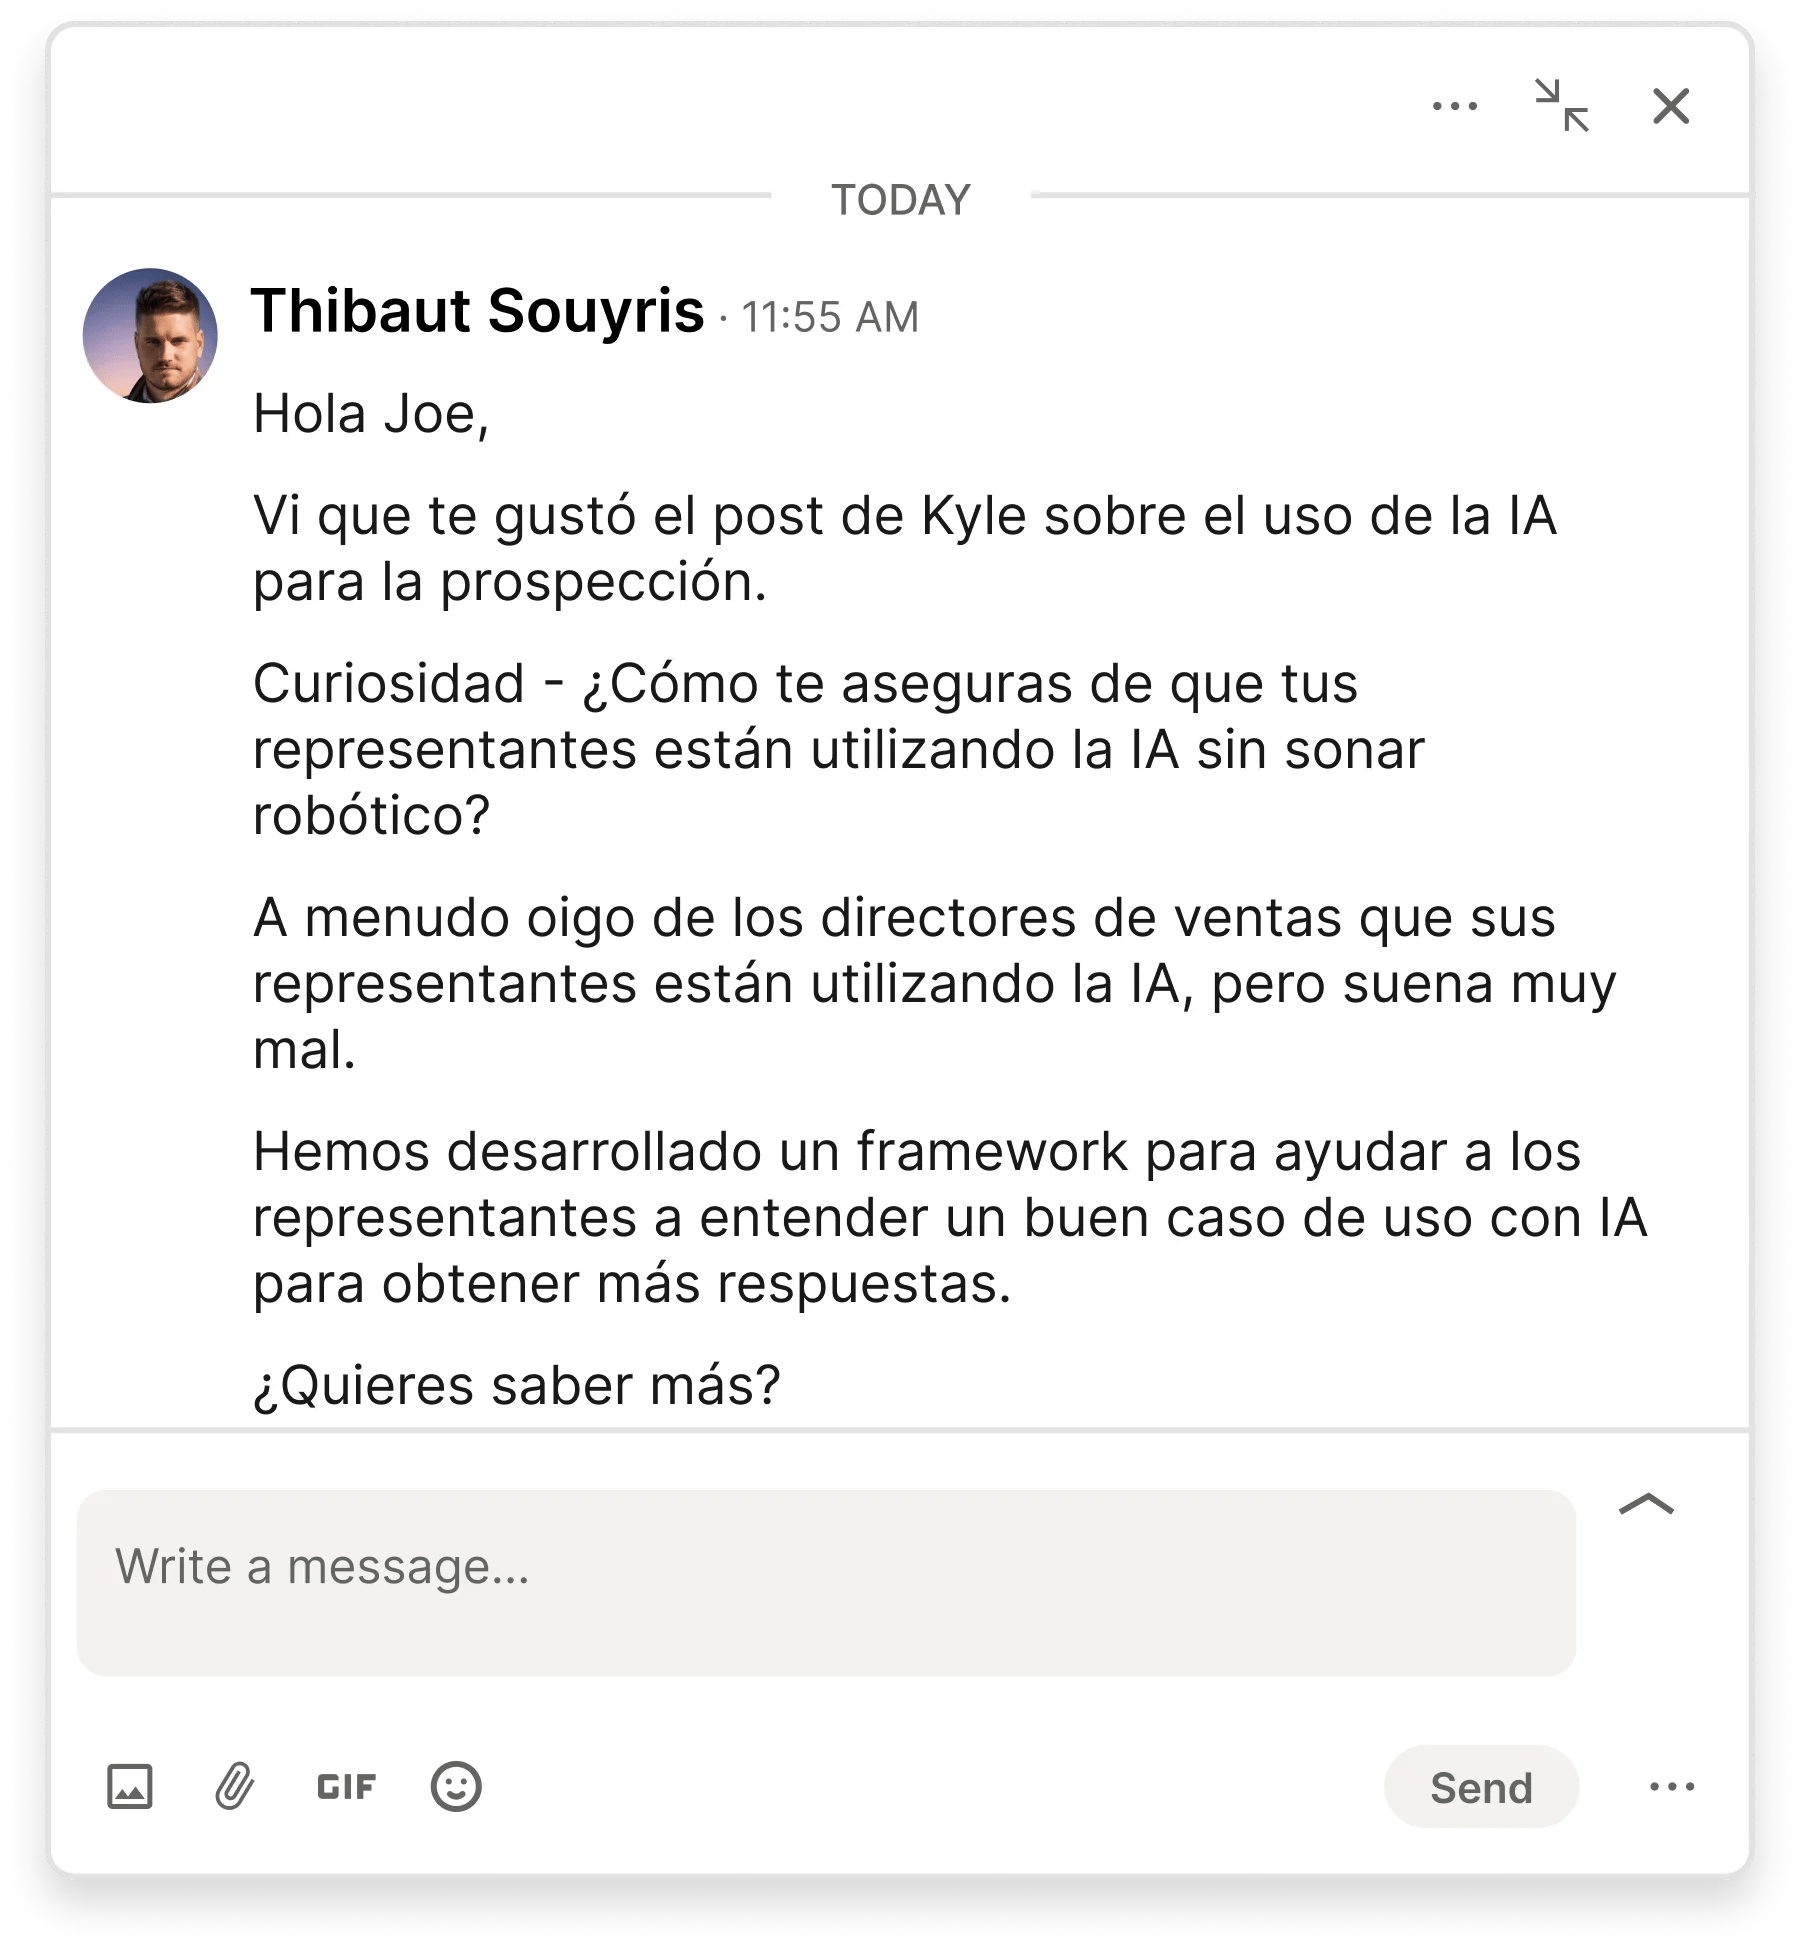 ES_thibaut-souyris-linkedin-connection-message